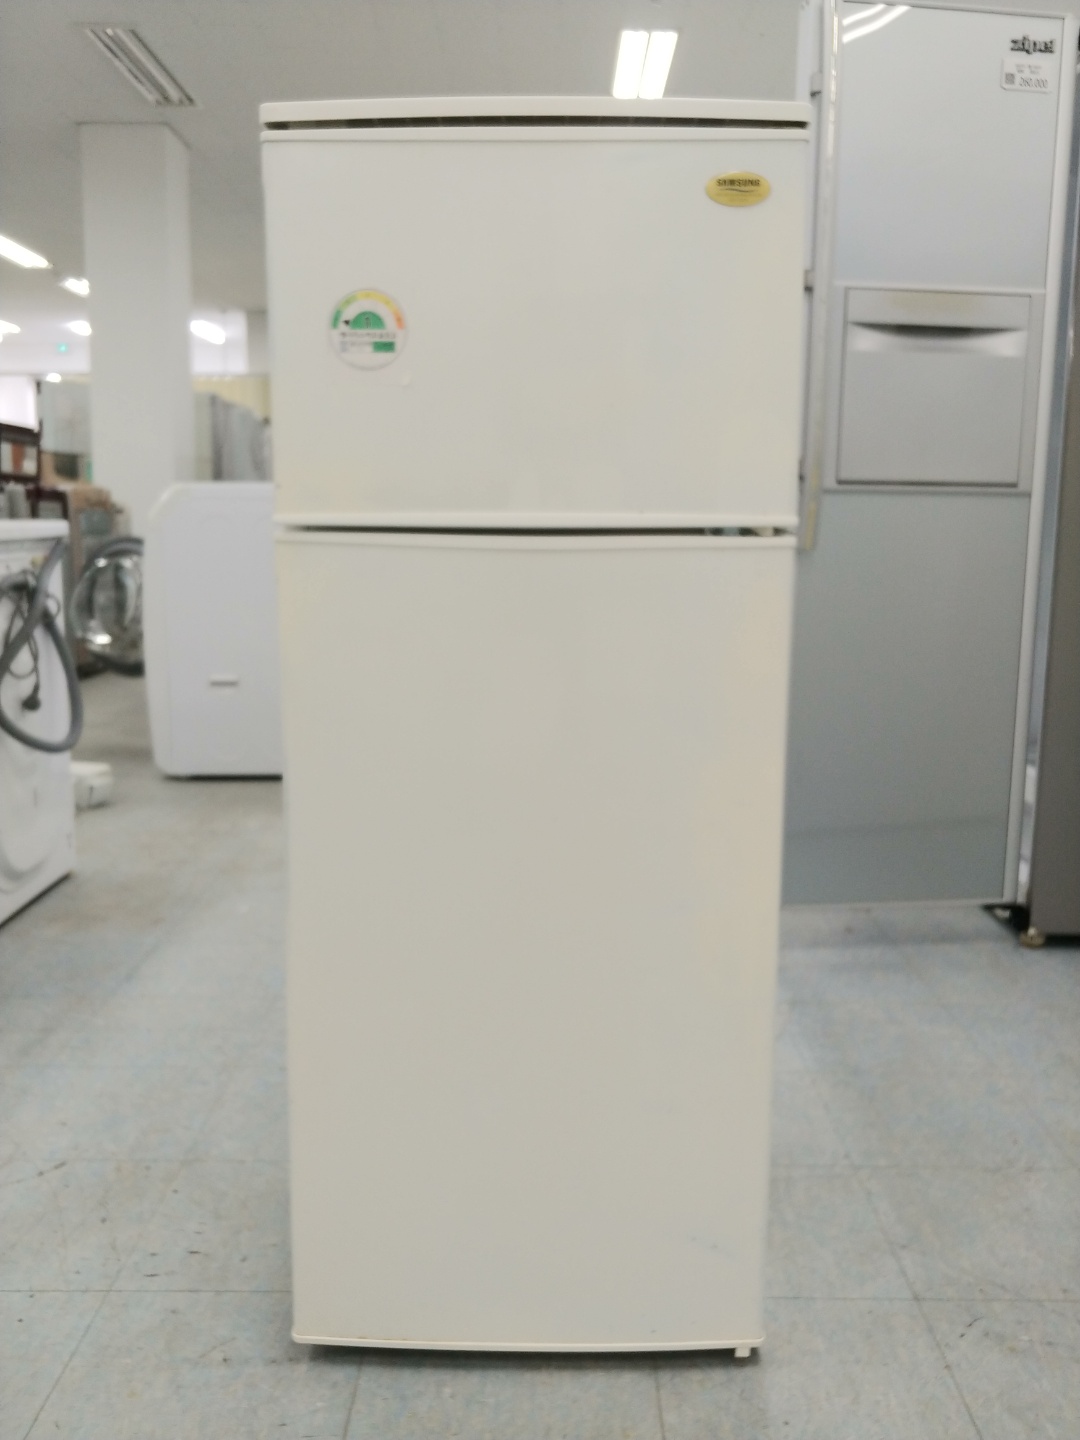 중고소형냉장고 삼성 145리터 미니 원룸 냉장고 2002년 하남 090604